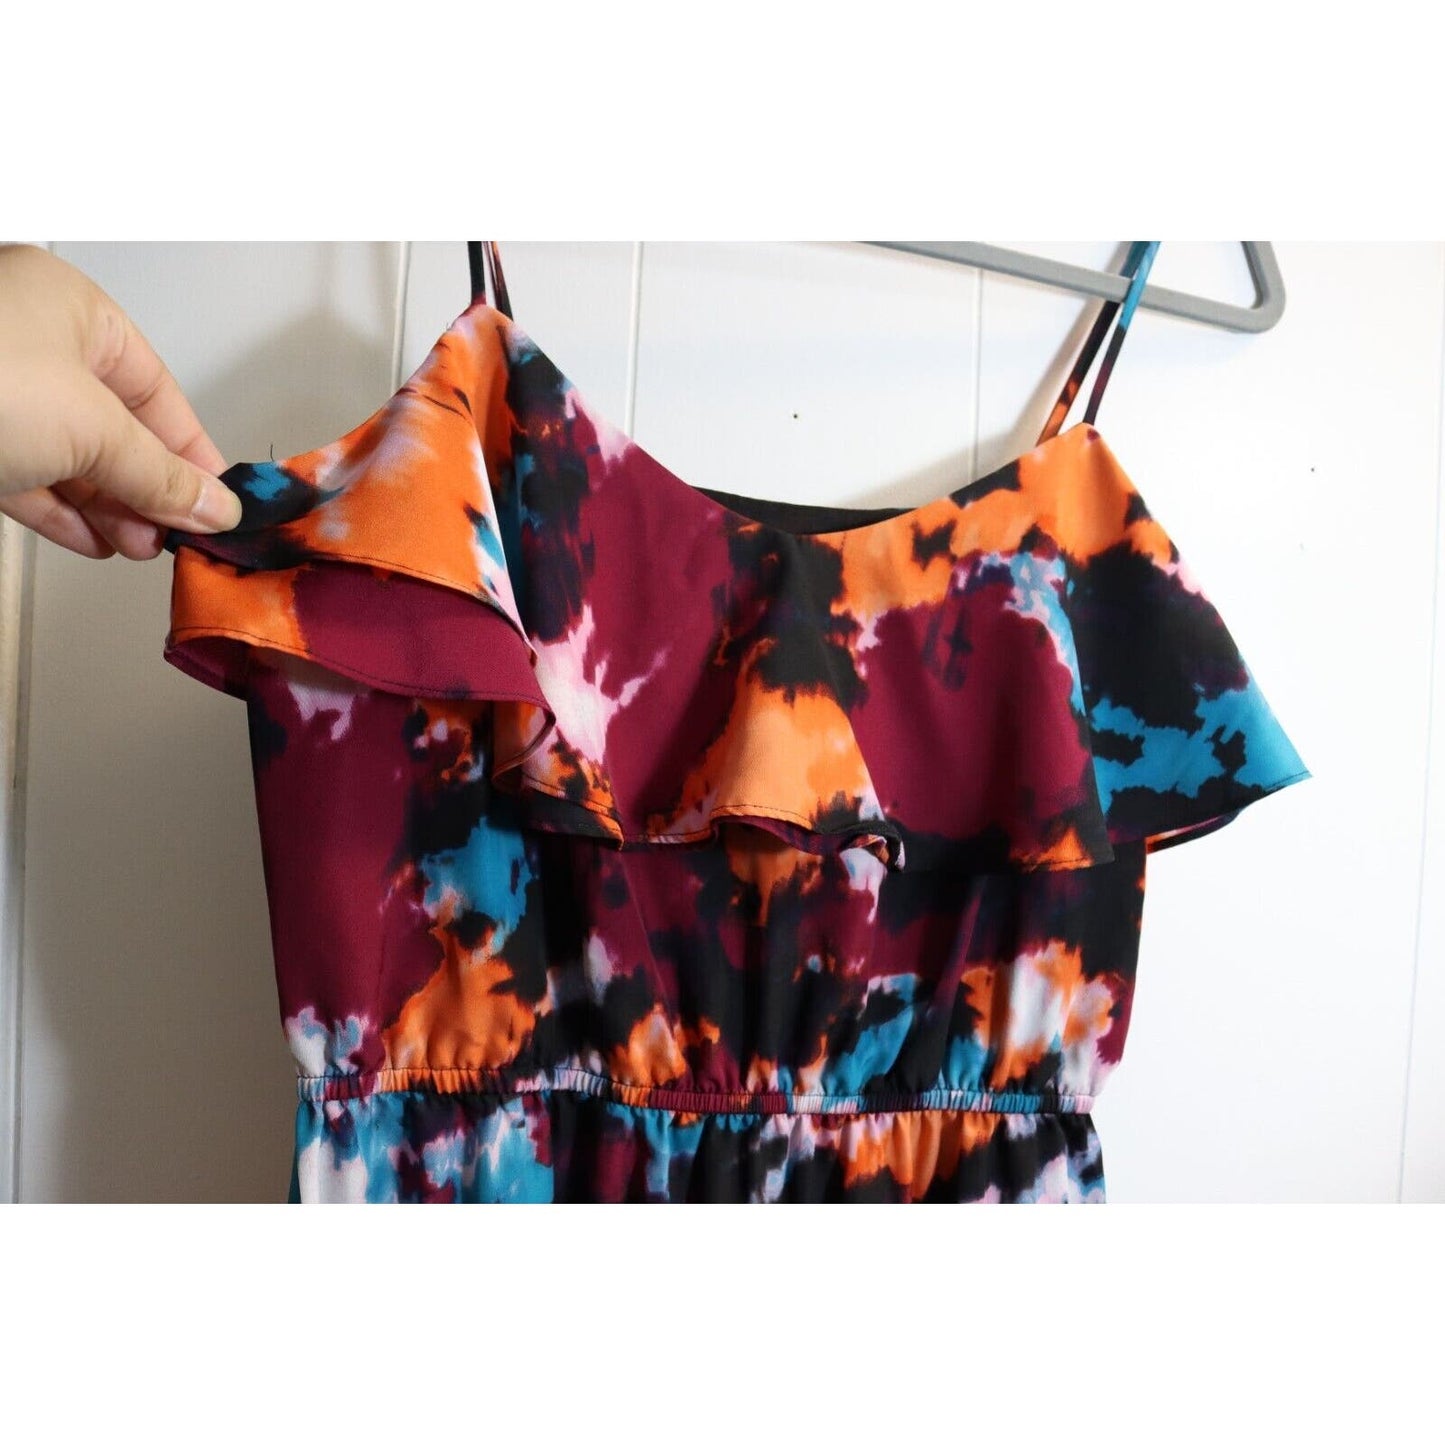 Loft Maxi Dress Size 8 Spagetti Strap Colorful